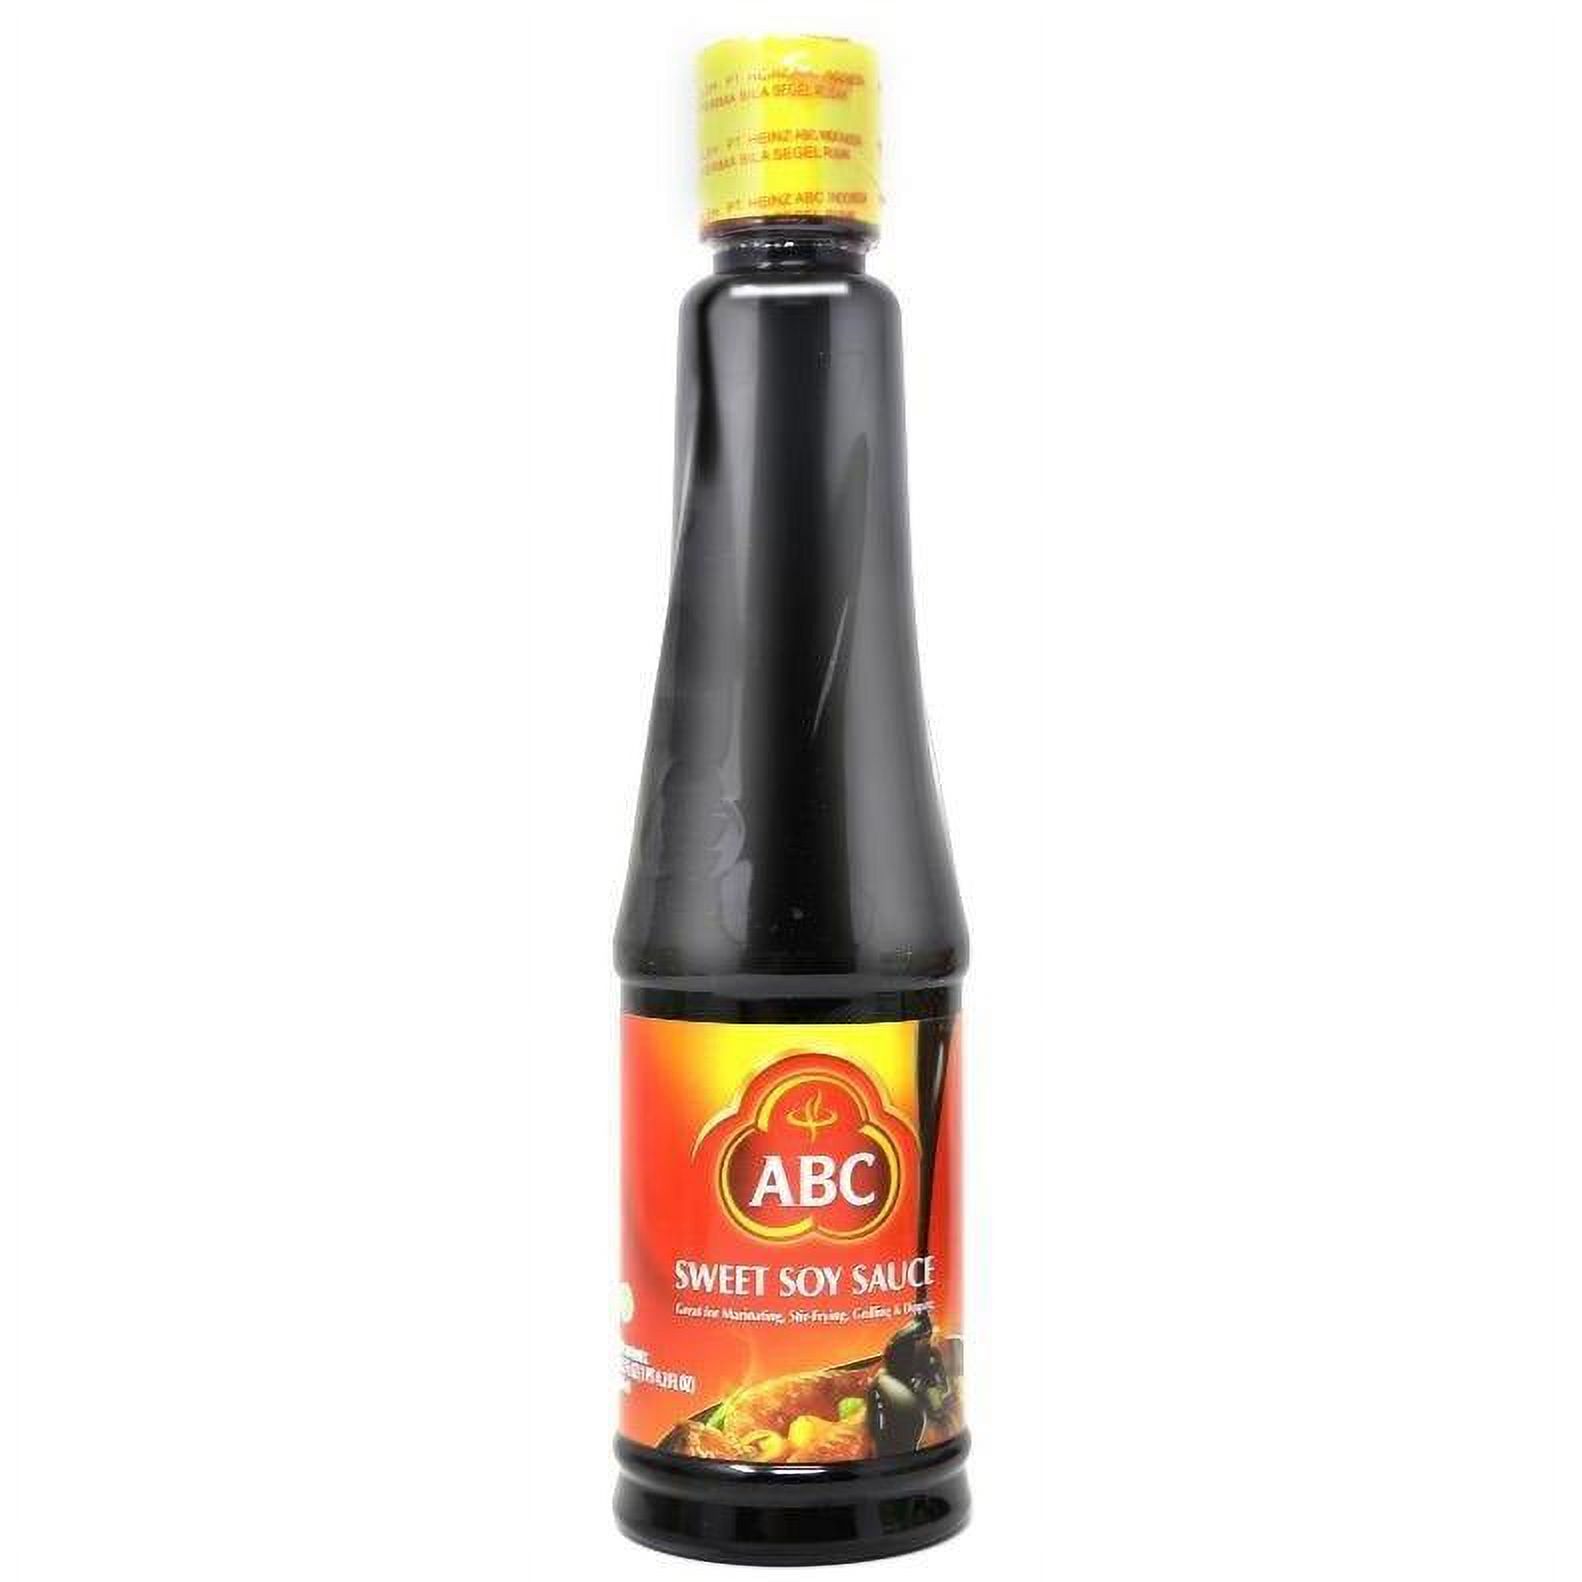 ABC Kecap Manis Sweet Soy Sauce 20.2 FL Oz (600 mL) - image 1 of 1